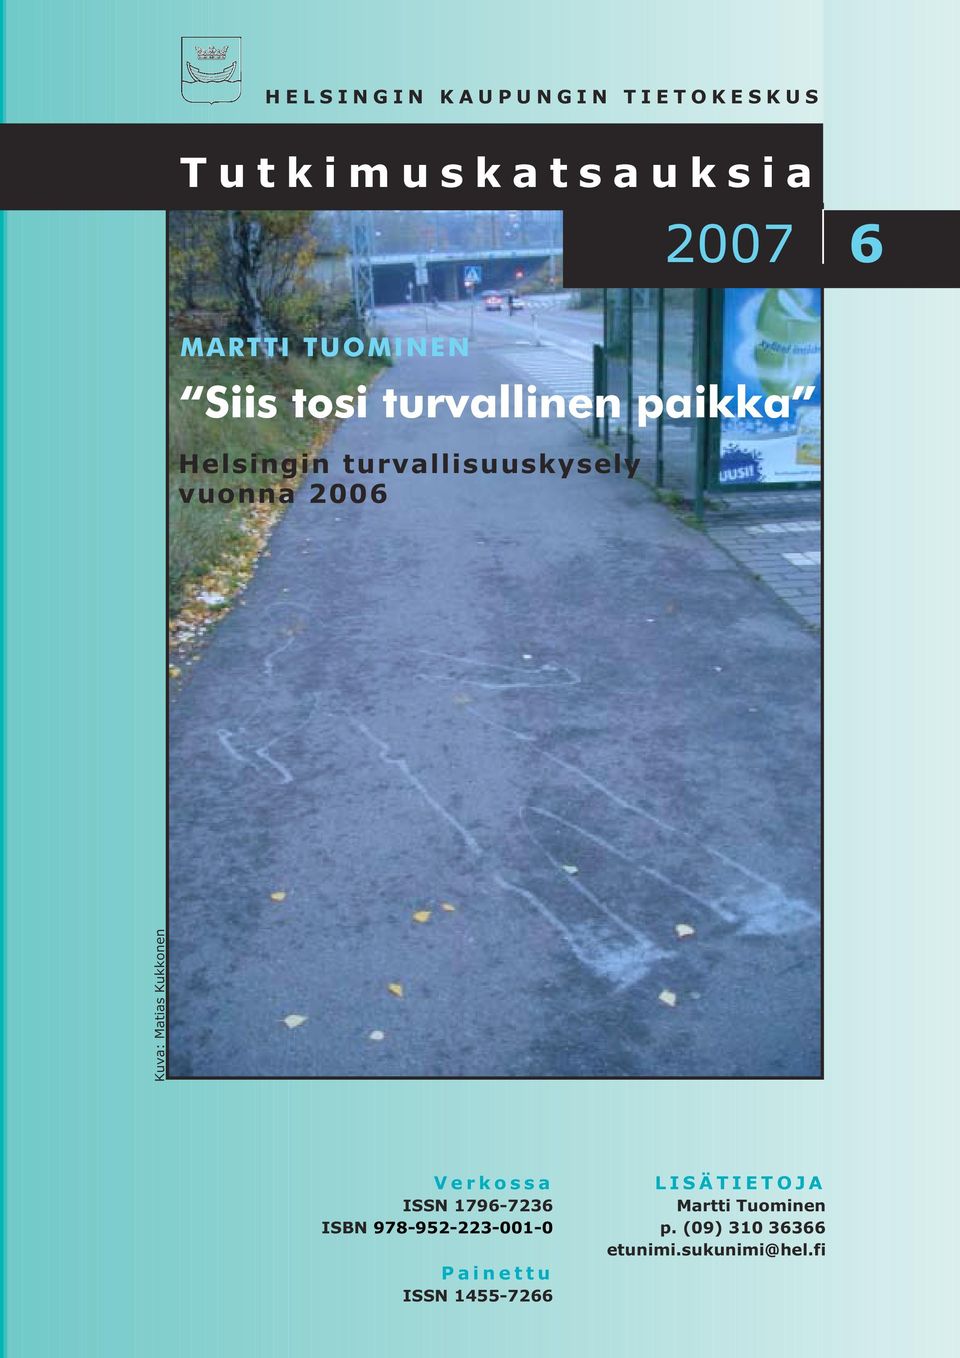 Matias Kukkonen Verkossa ISSN 1796-7236 ISBN 978-952-223-001-0 Painettu ISSN